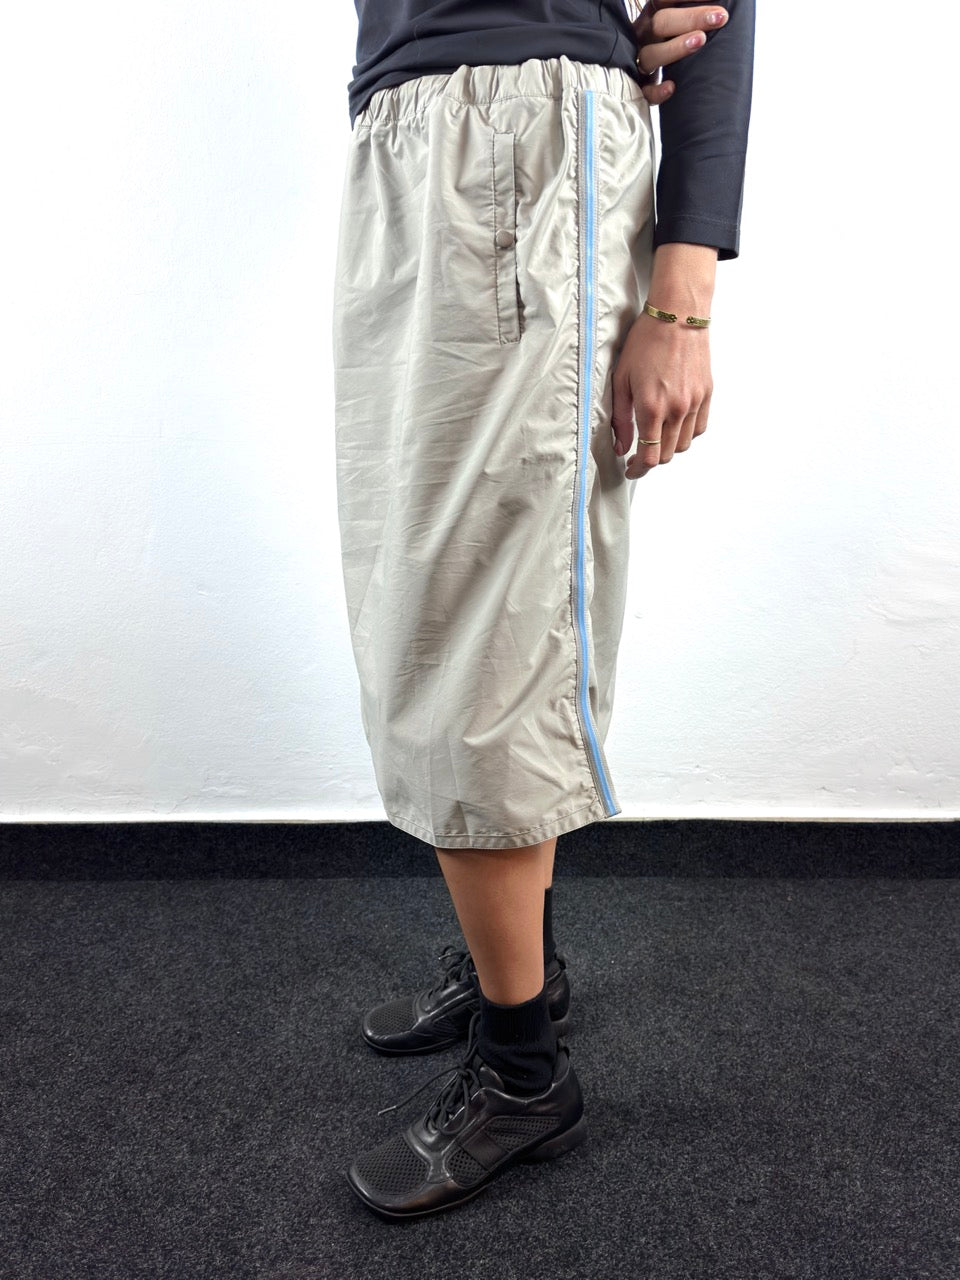 S/S 2000 Skirt (44W)